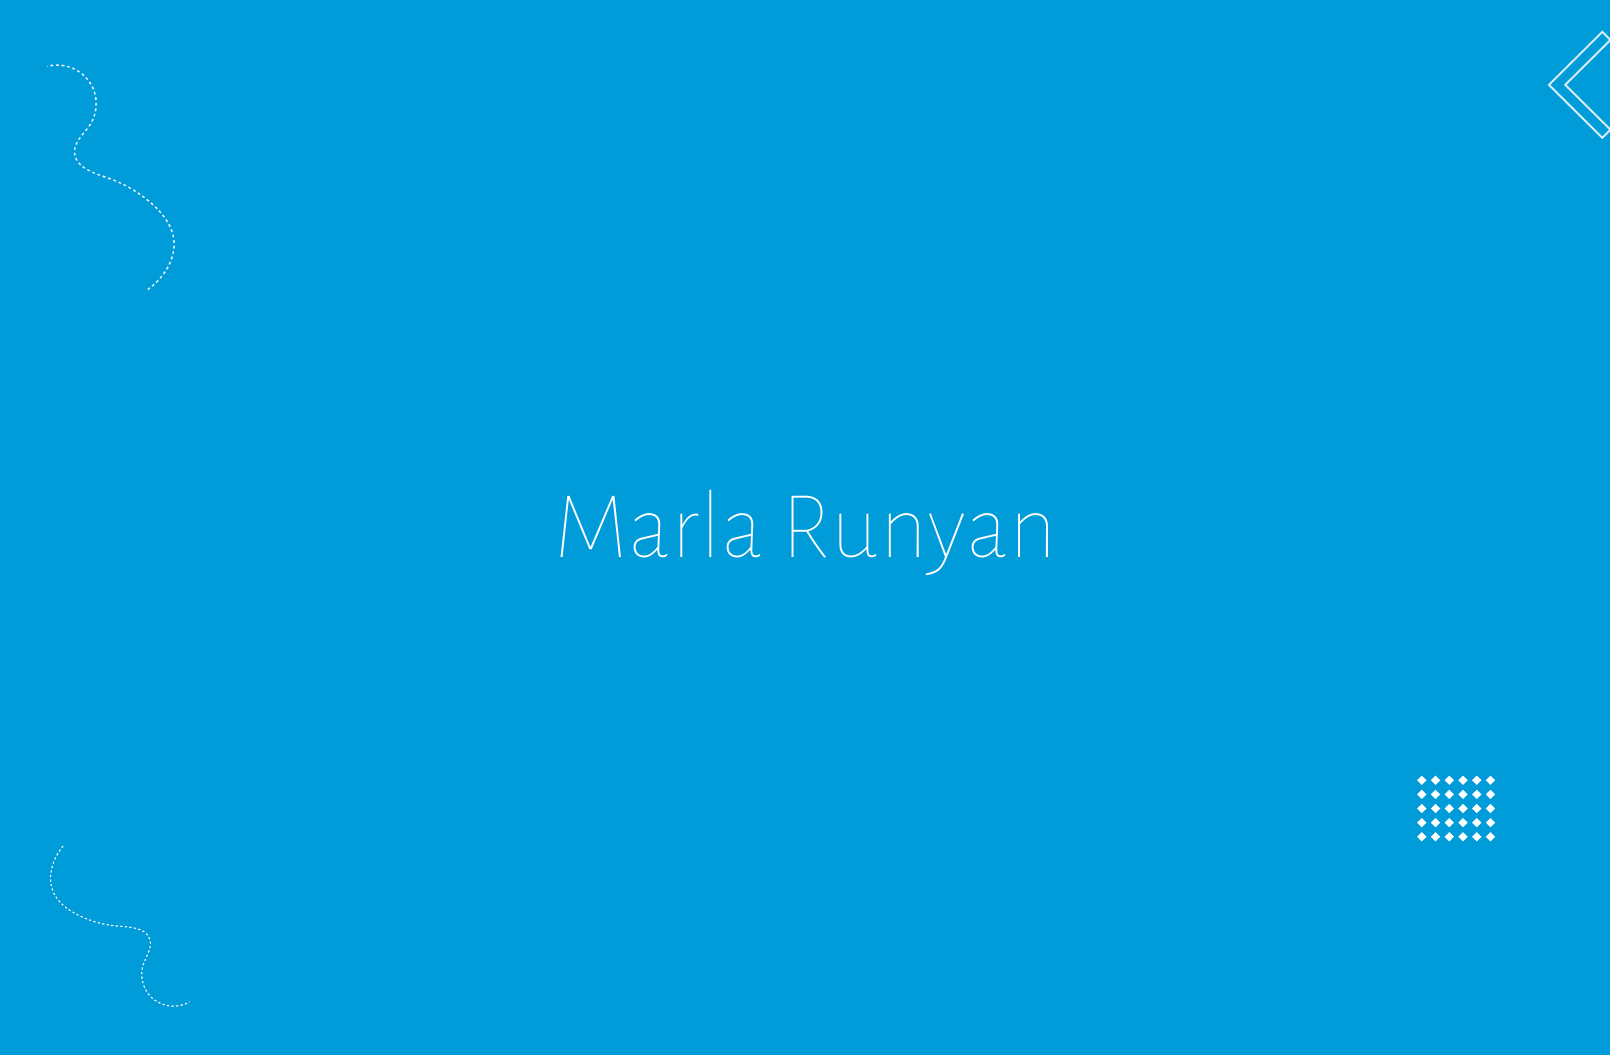 La historia de Marla Runyan